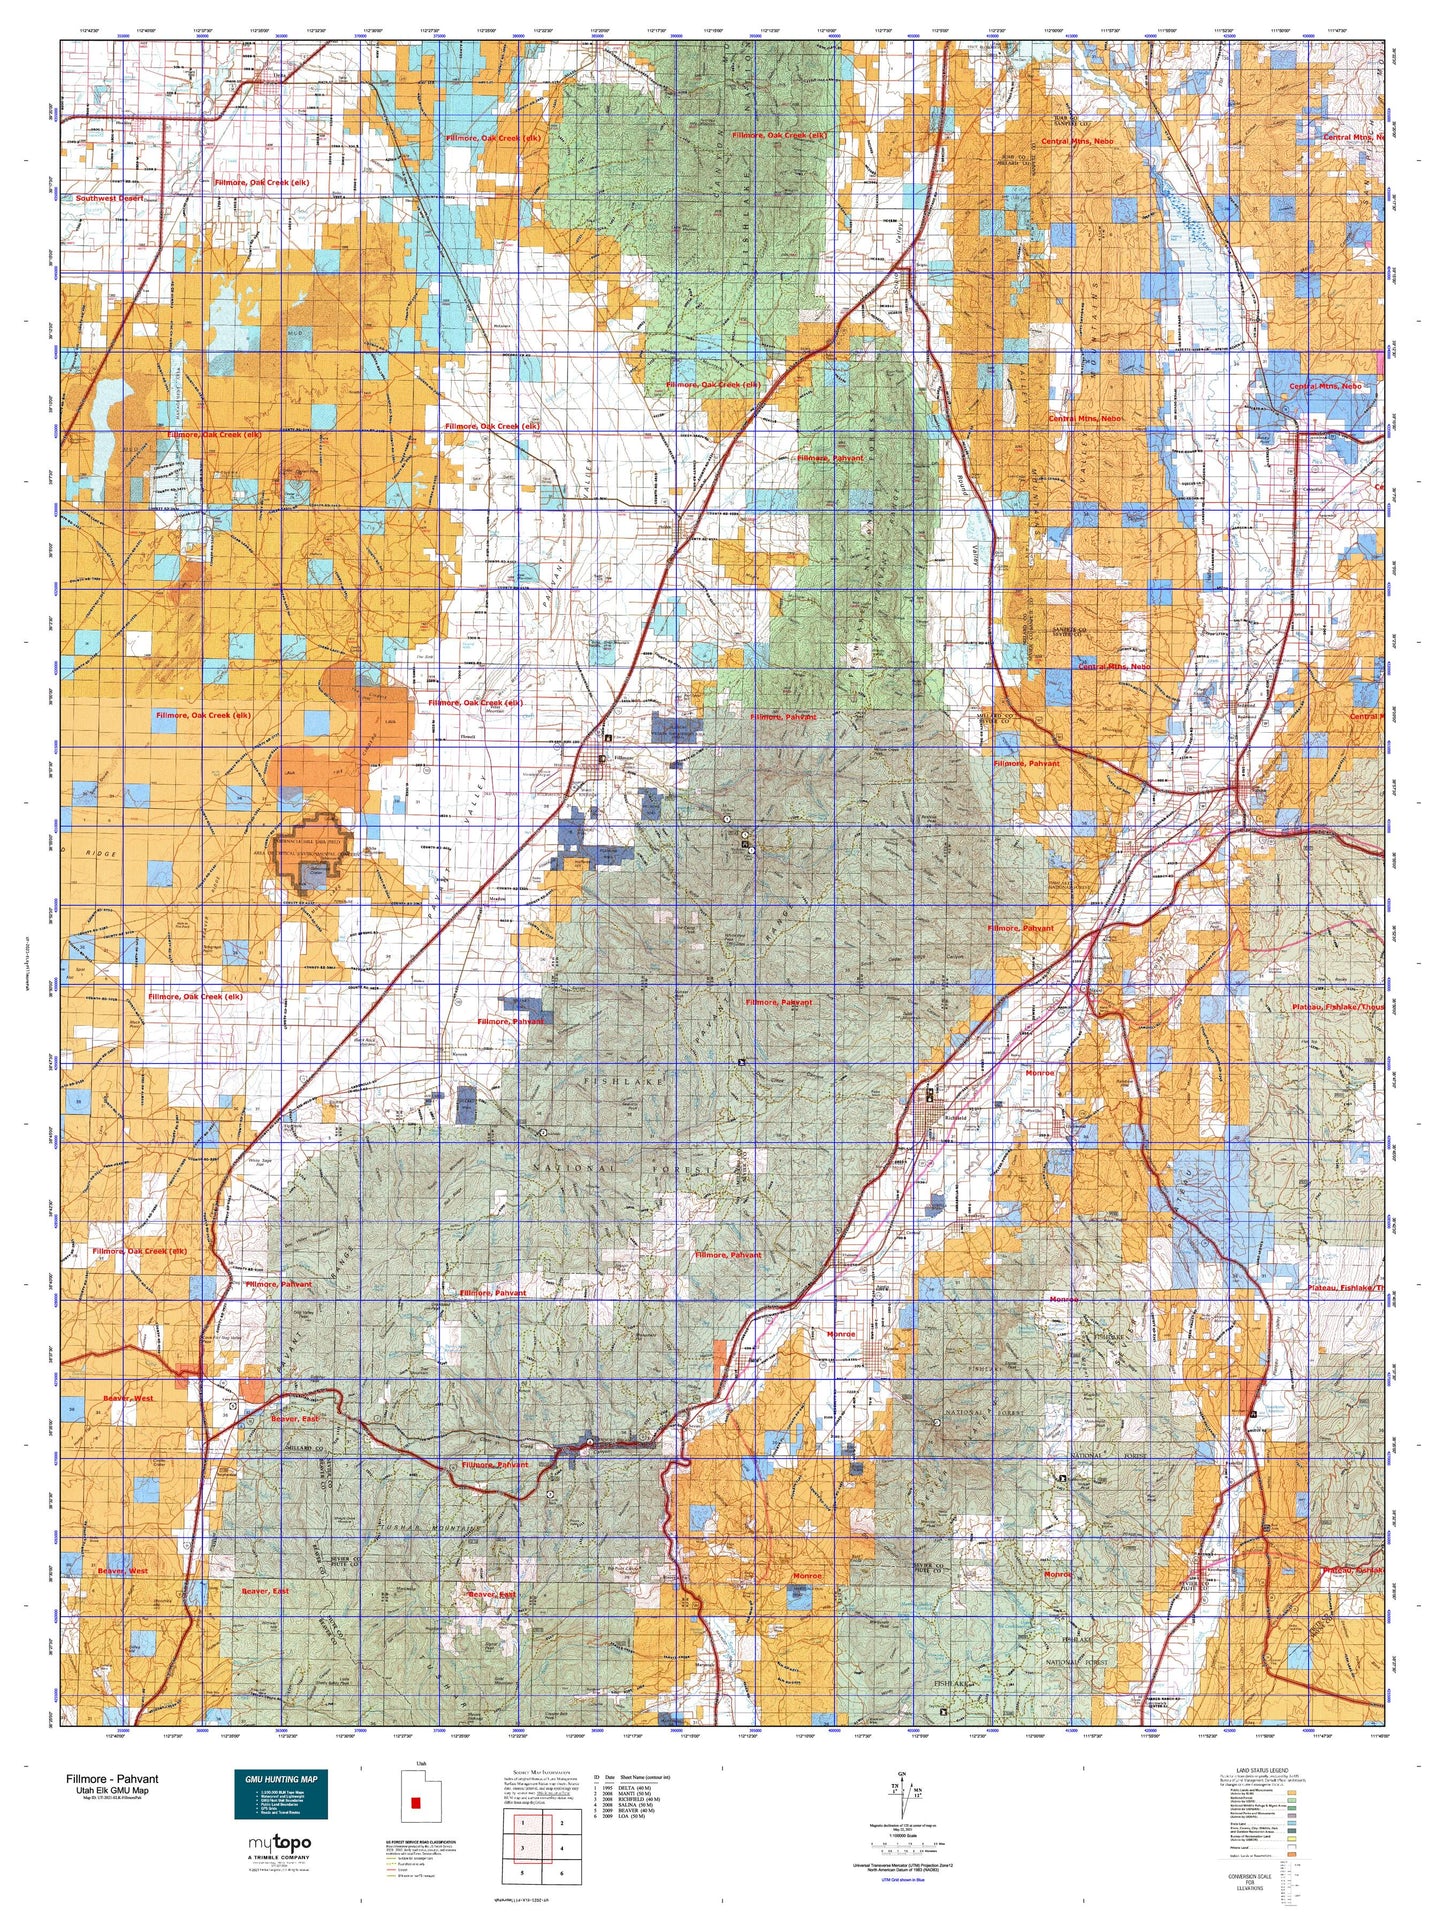 Utah Elk GMU Fillmore - Pahvant Map Image